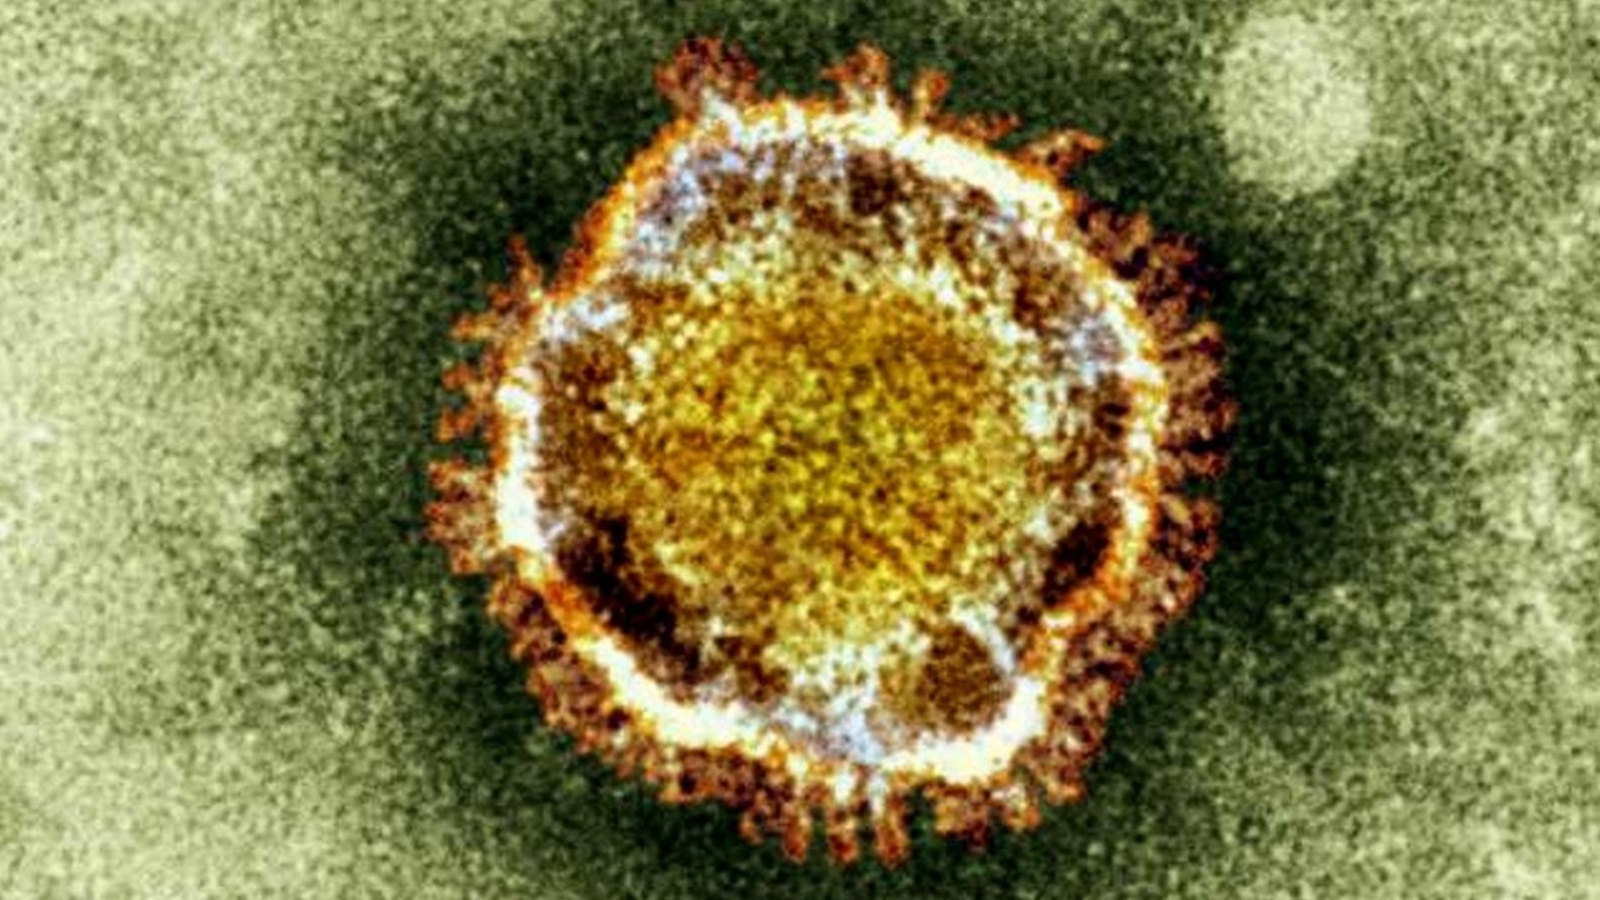 فيروس كورونا ينتمي لعائلة الفيروسات التاجية (أسوشيتد برس)